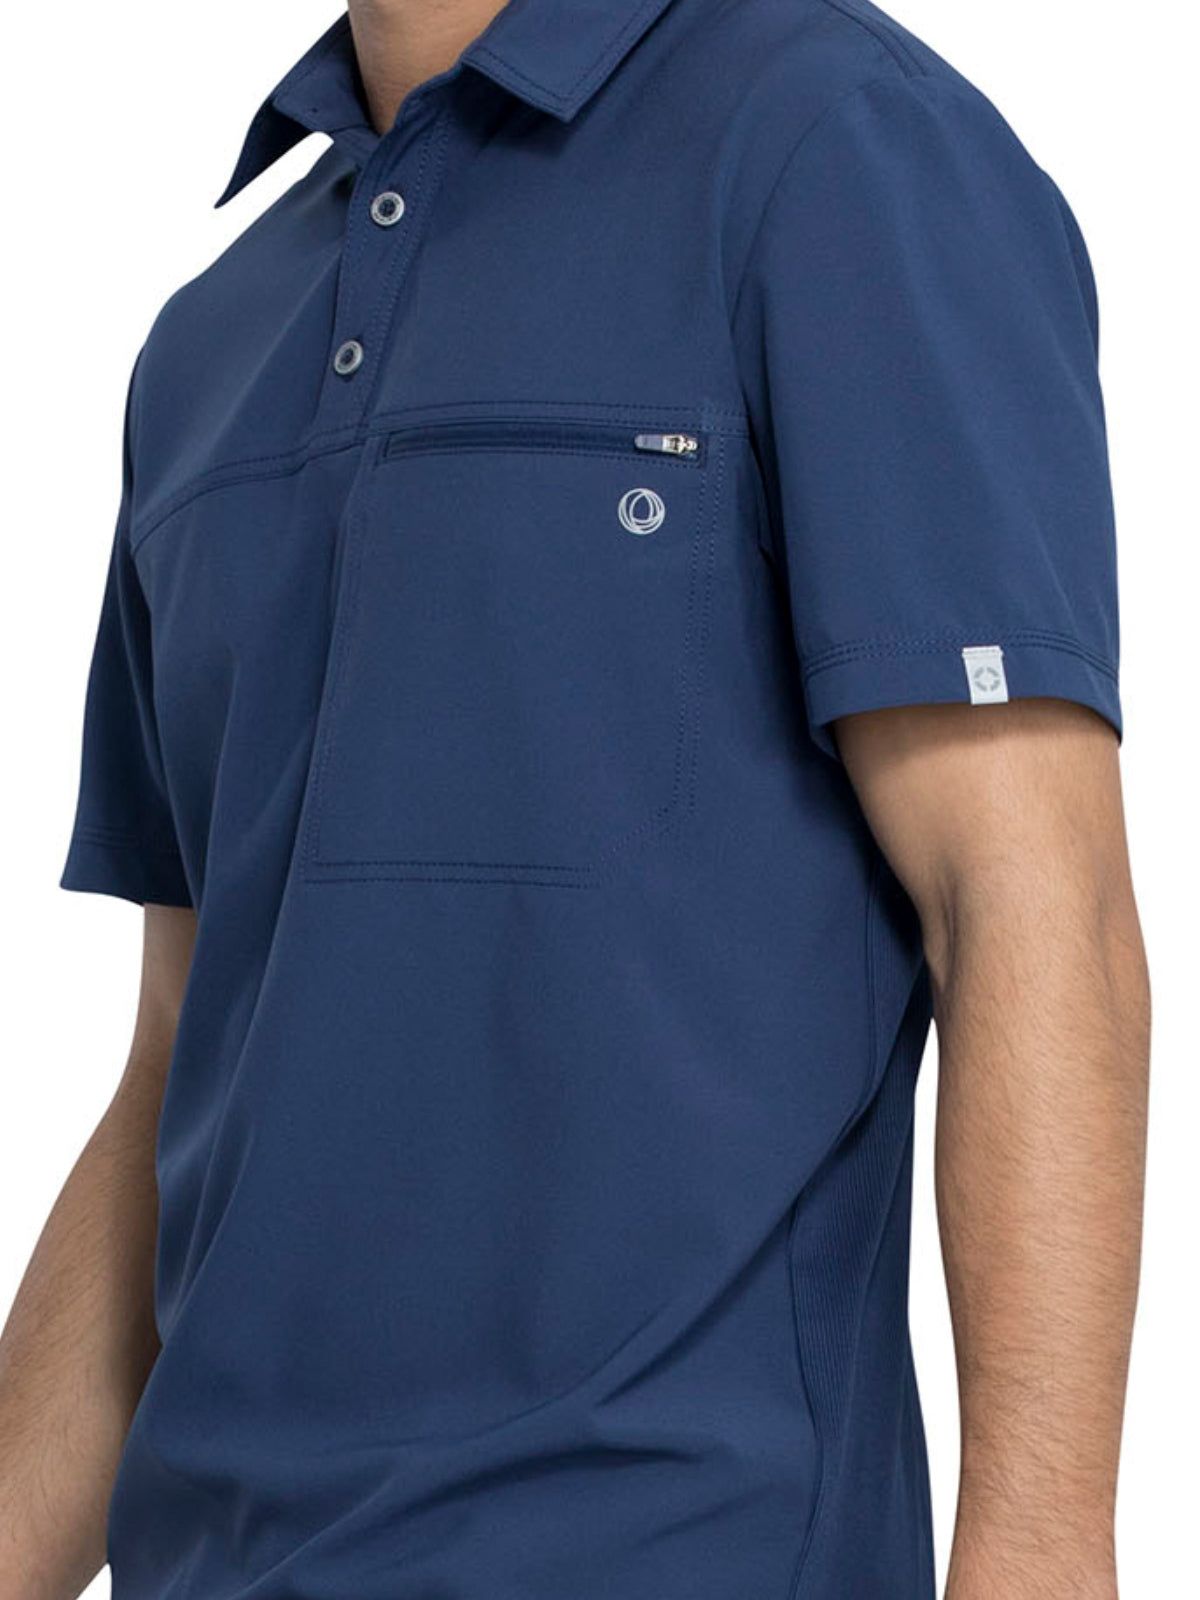 Men's 1-Pocket Tuckable Zipper Polo Top